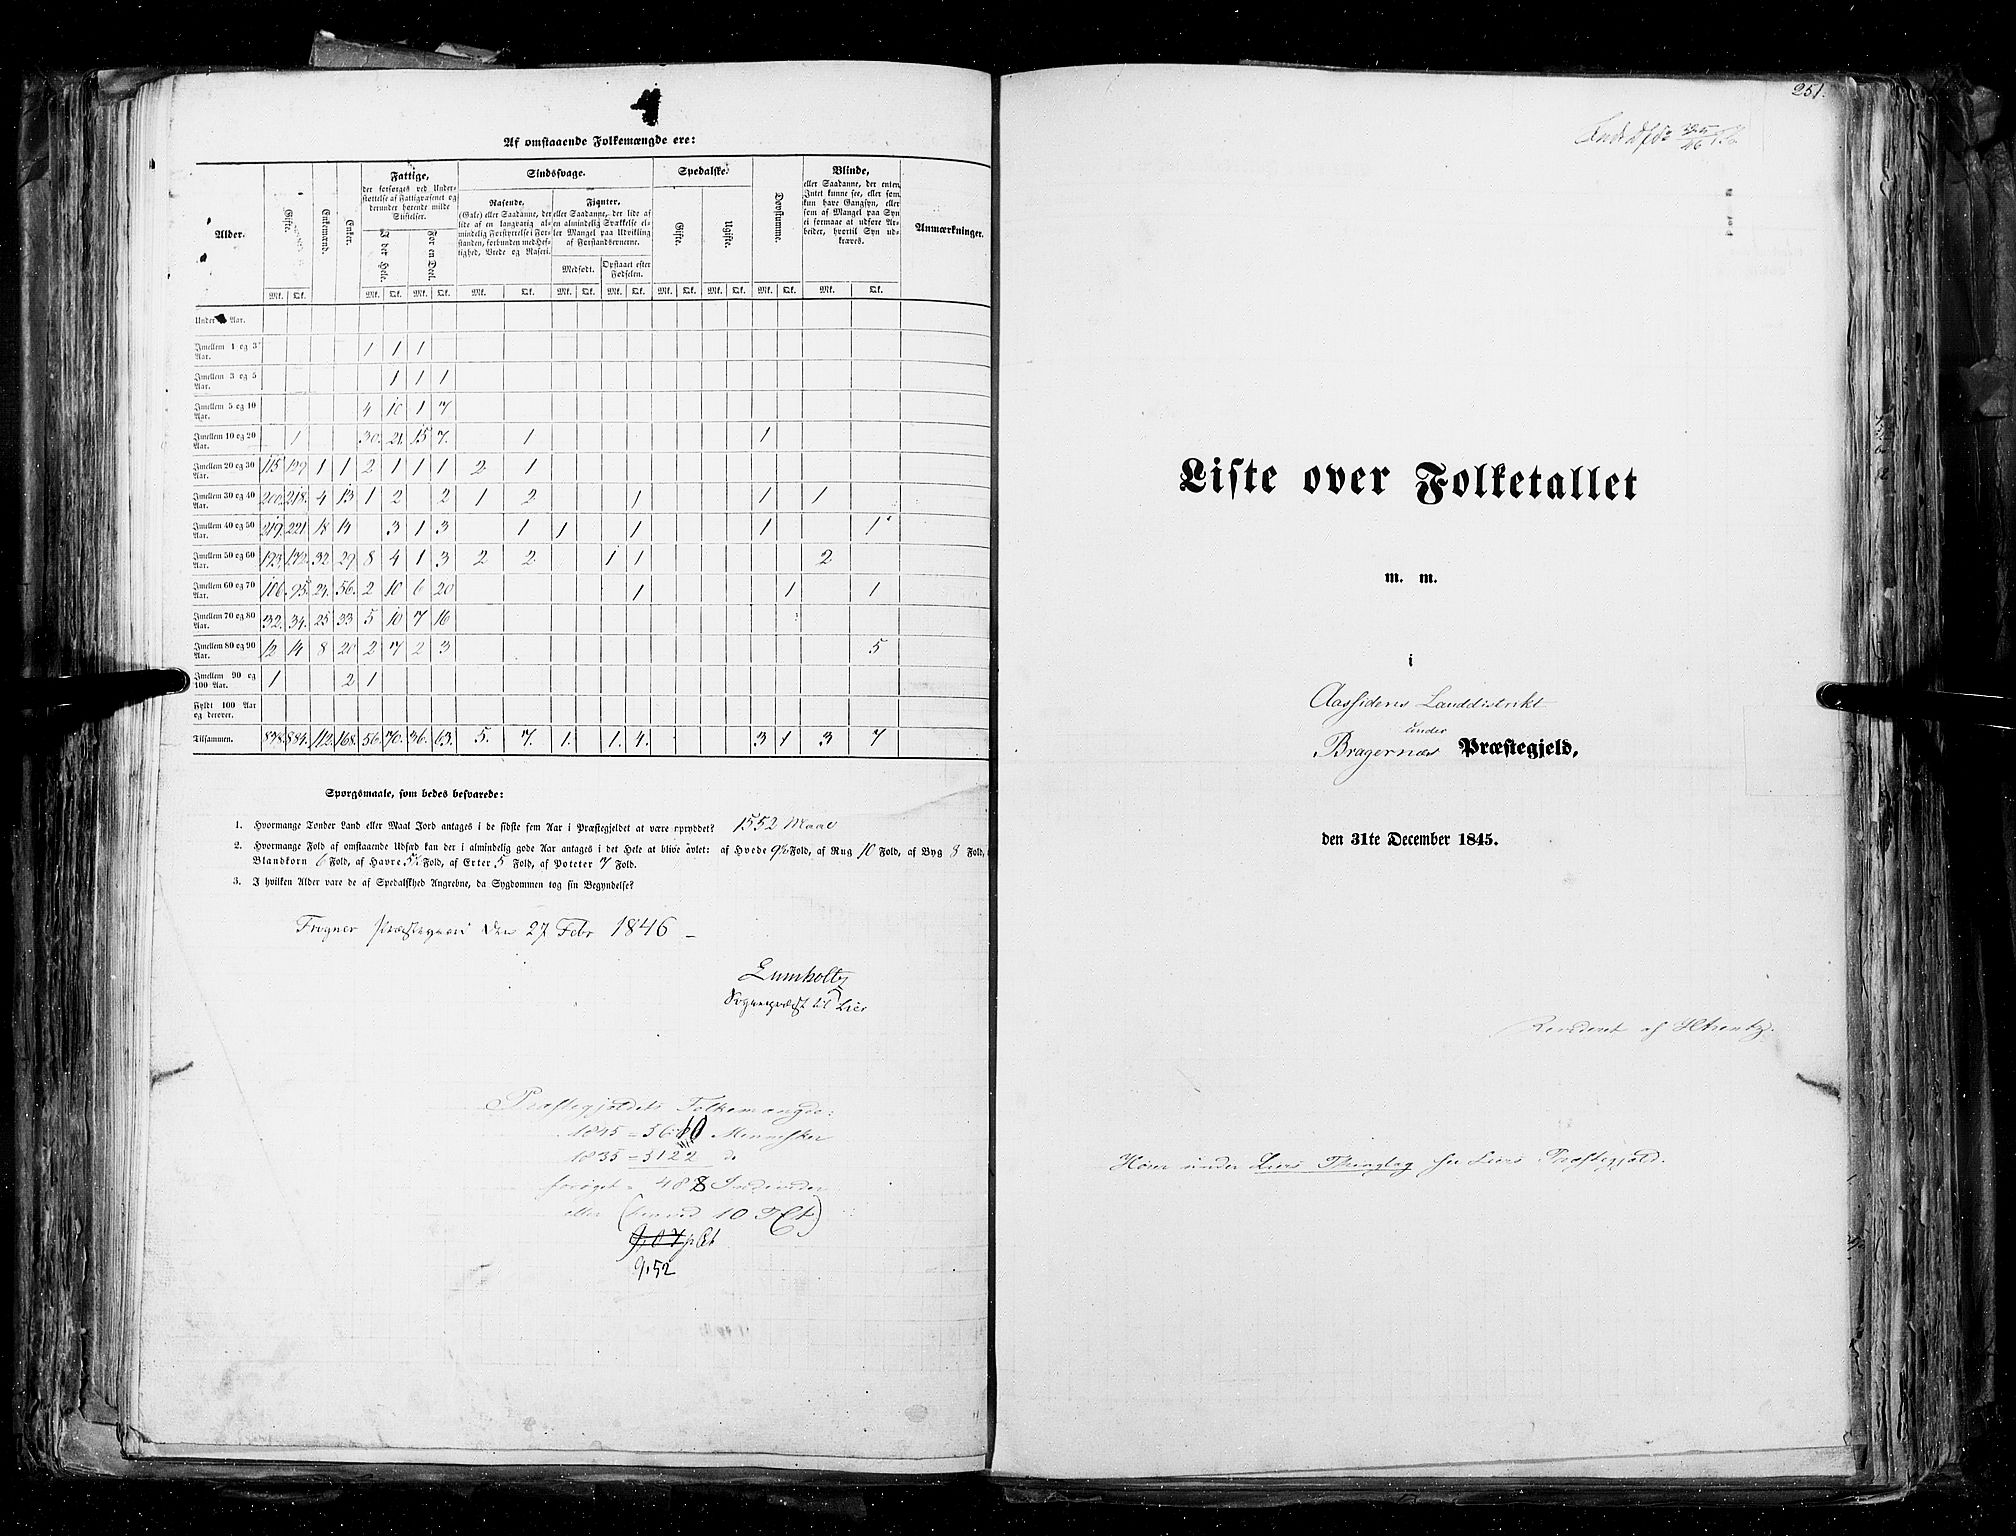 RA, Census 1845, vol. 4: Buskerud amt og Jarlsberg og Larvik amt, 1845, p. 251